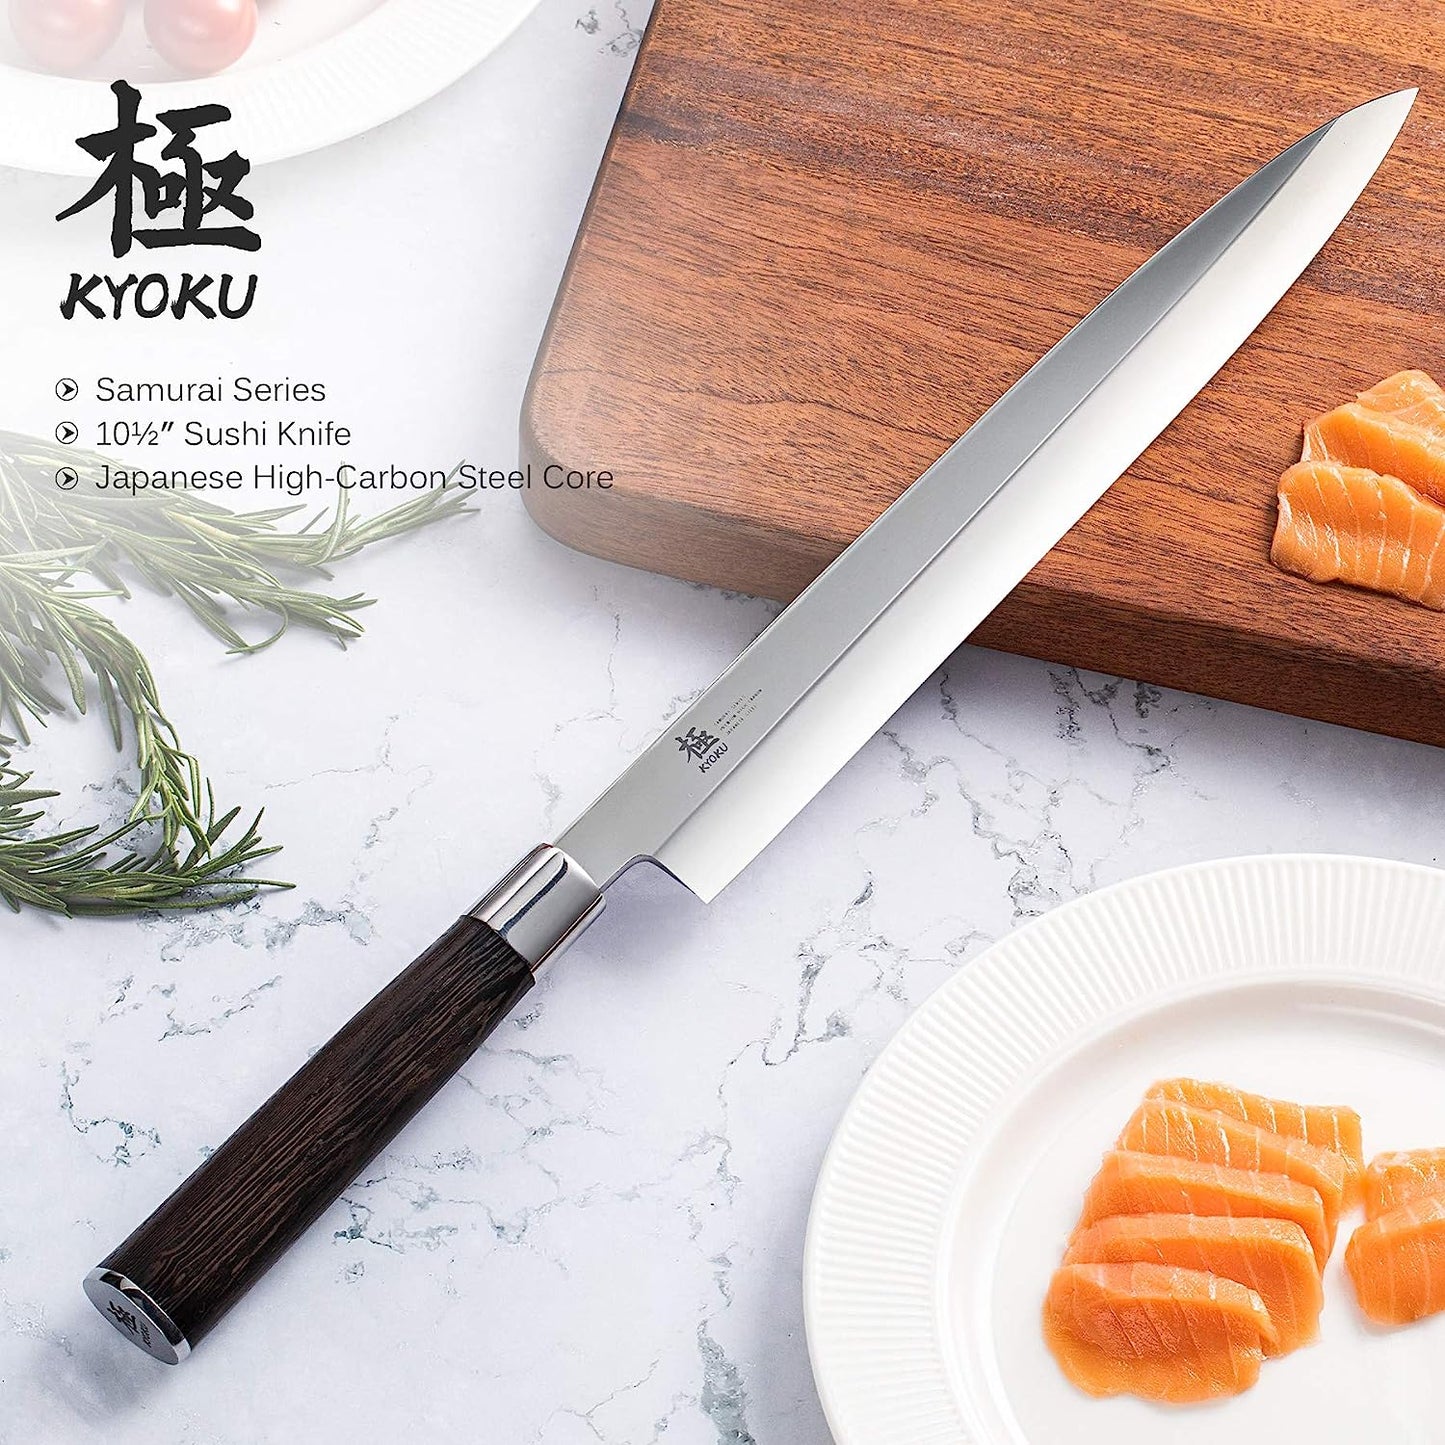 KD 10.5" Yanagiba Knife Japanese Sushi Sashimi Knives Wenge Wood Handle